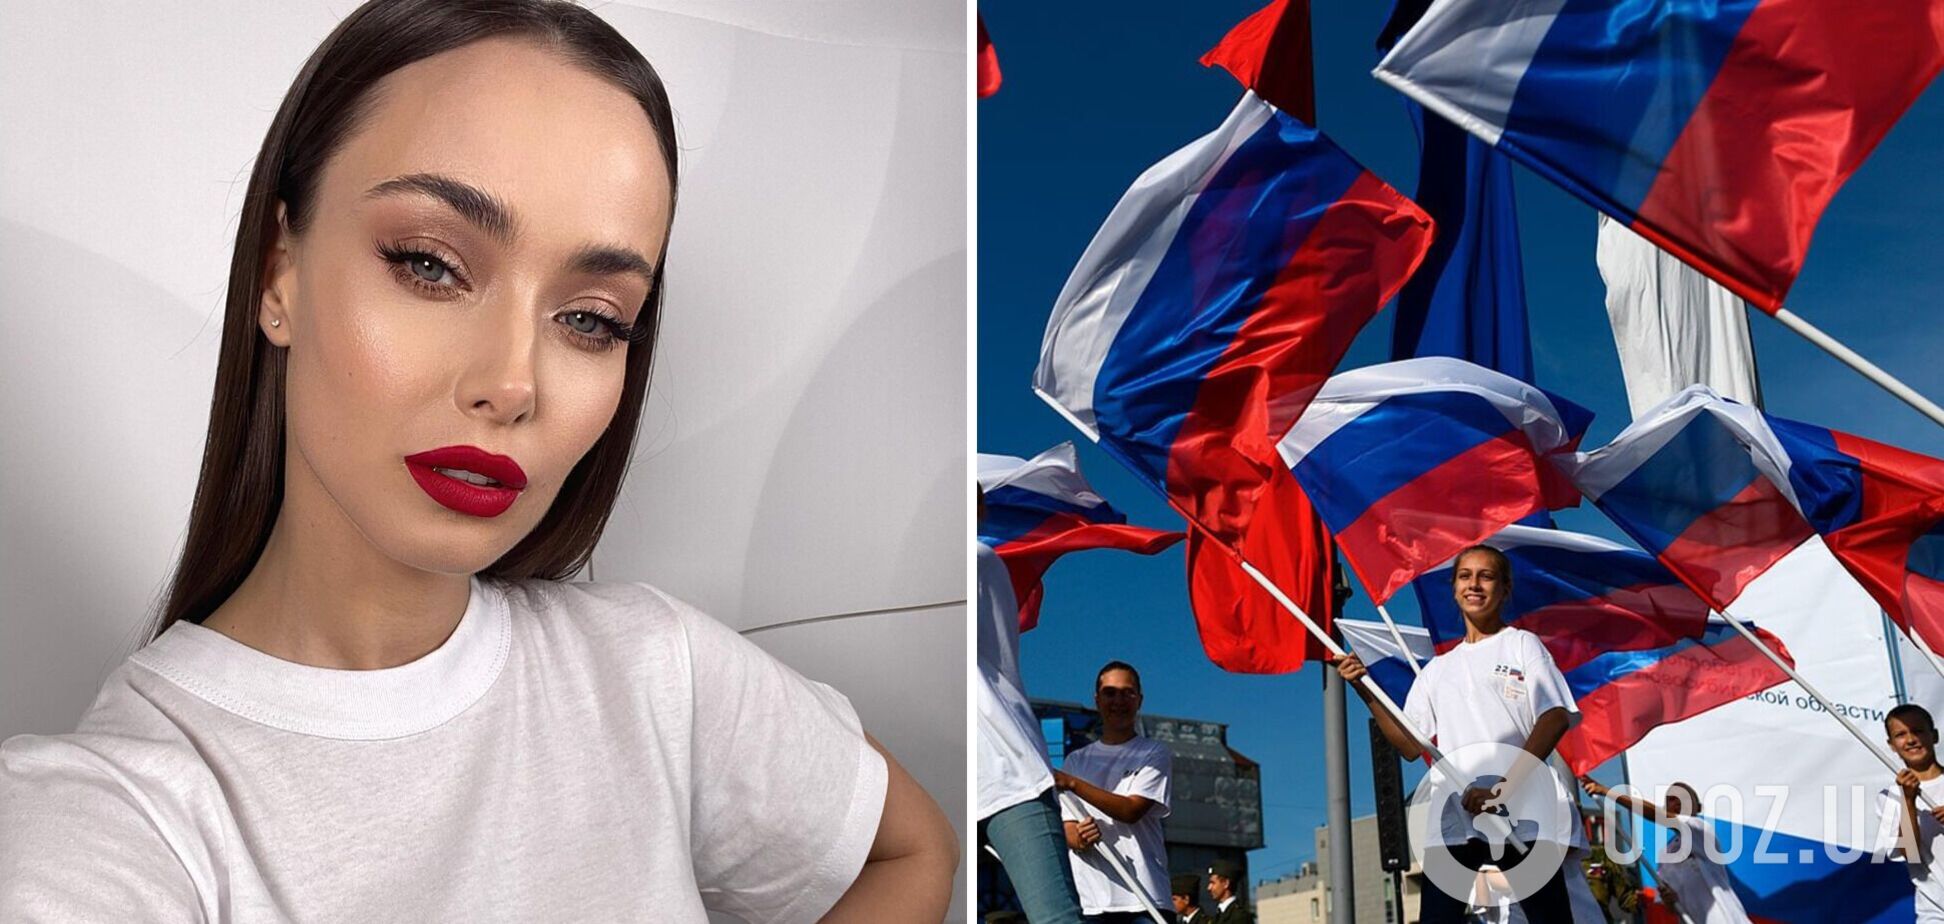 Мишина рассказала о друзьях-россиянах, с которыми поддерживает контакт: вы должны понять нашу ненависть